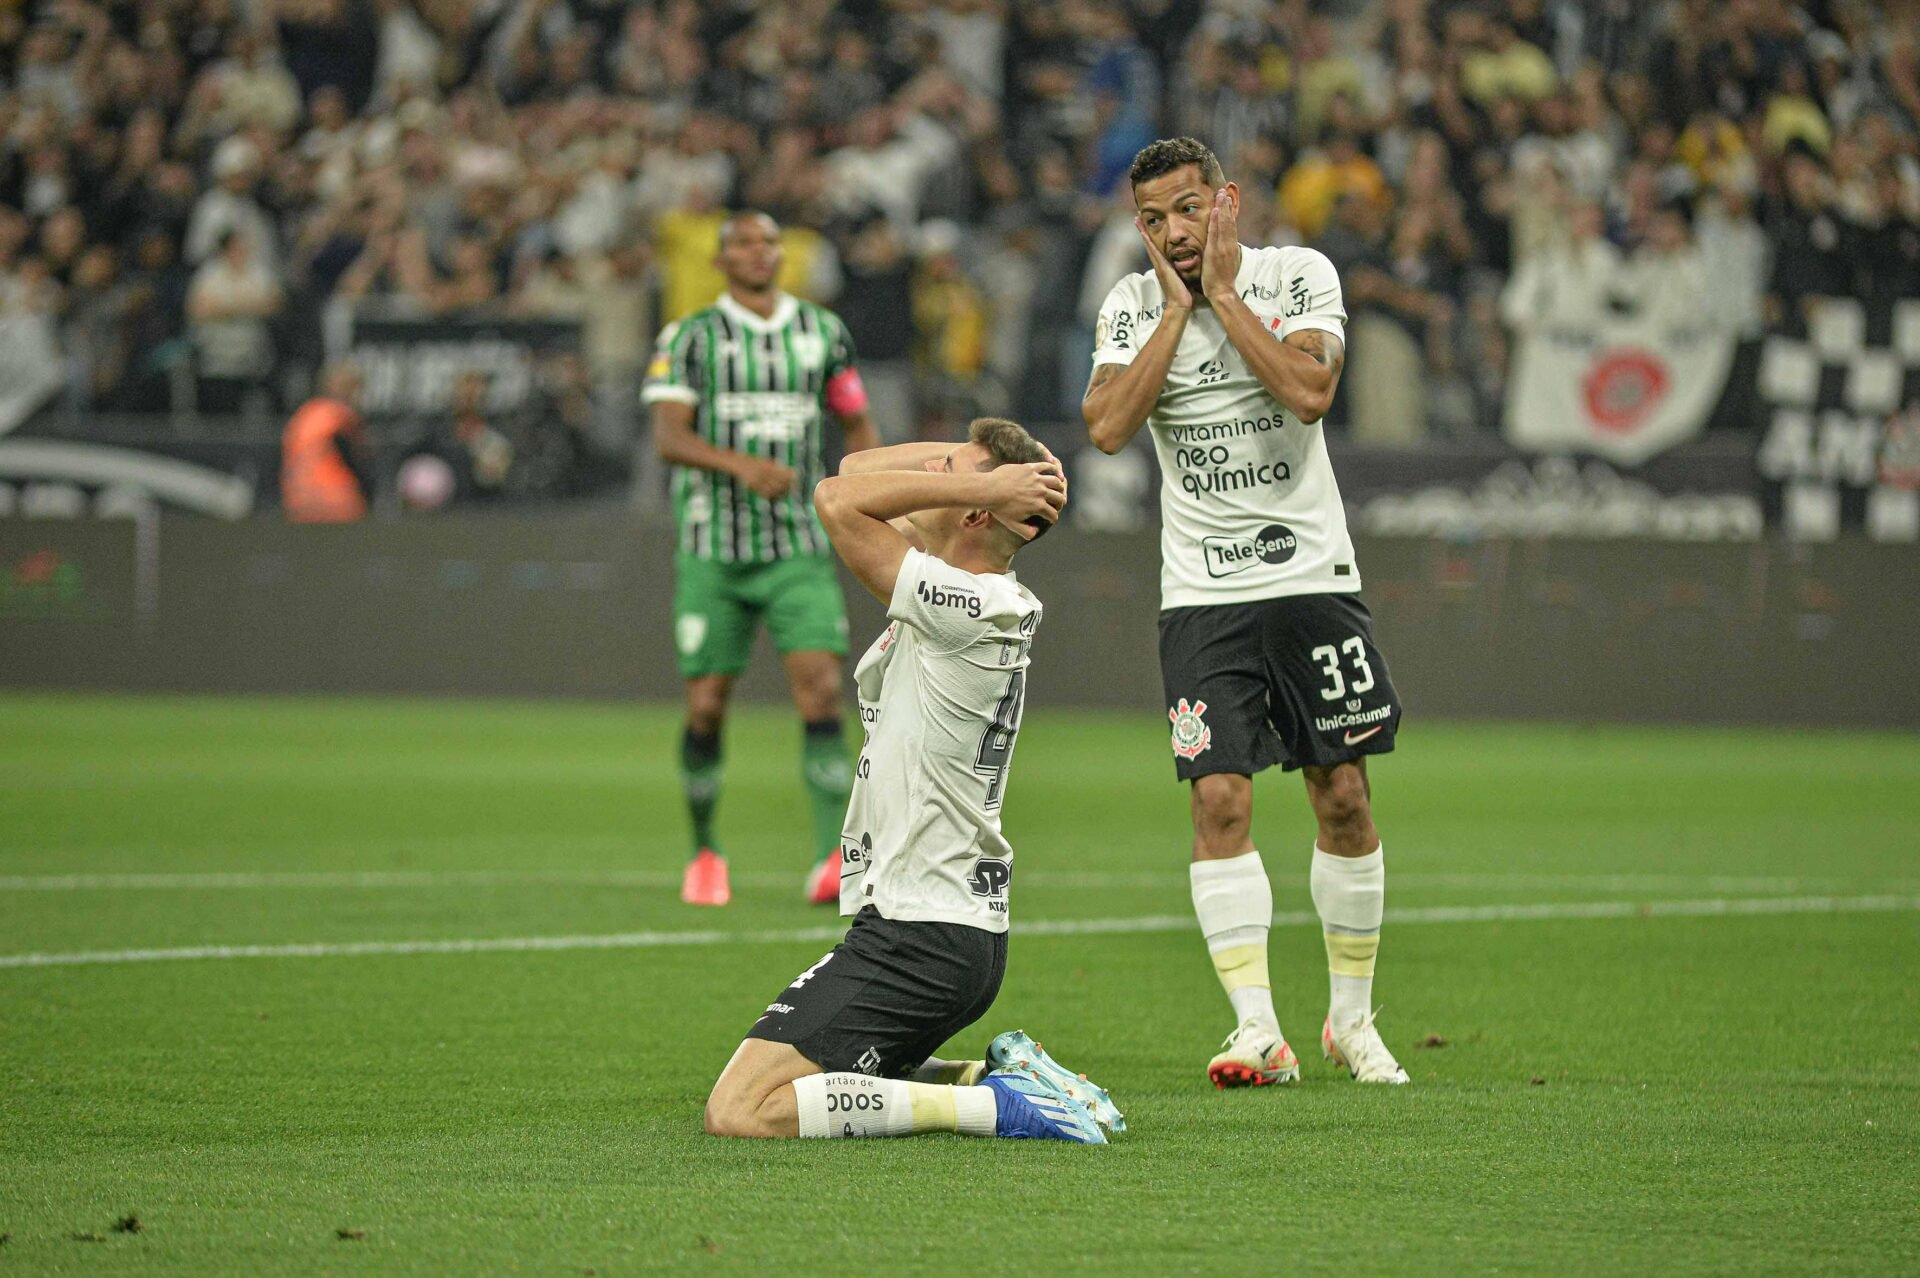 Análise - Após jogo ruim e clara dependência a Renato, a pergunta é: qual  Corinthians veremos jogar agora? - Gazeta Esportiva